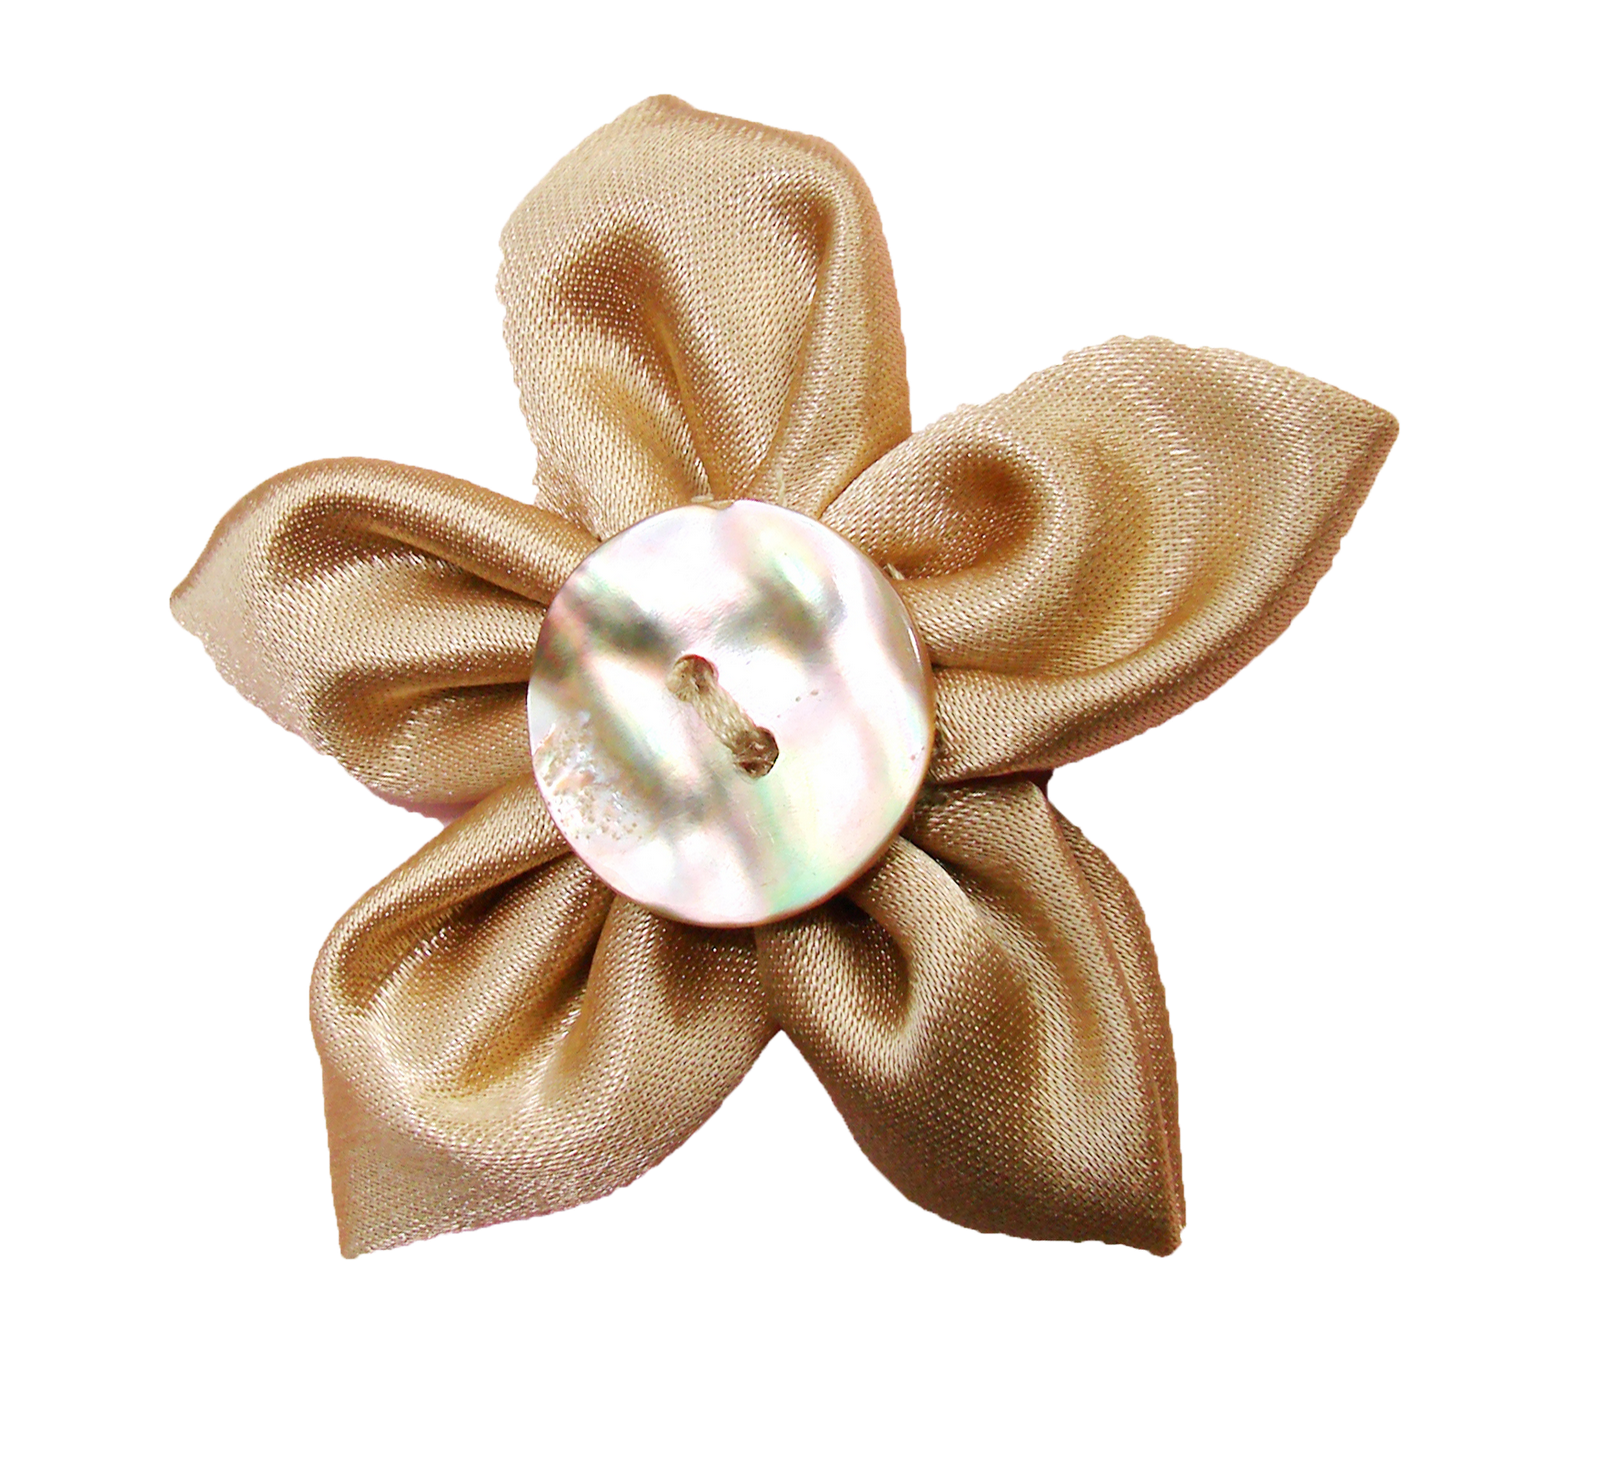 Immagine del PNG del fiore del tessuto